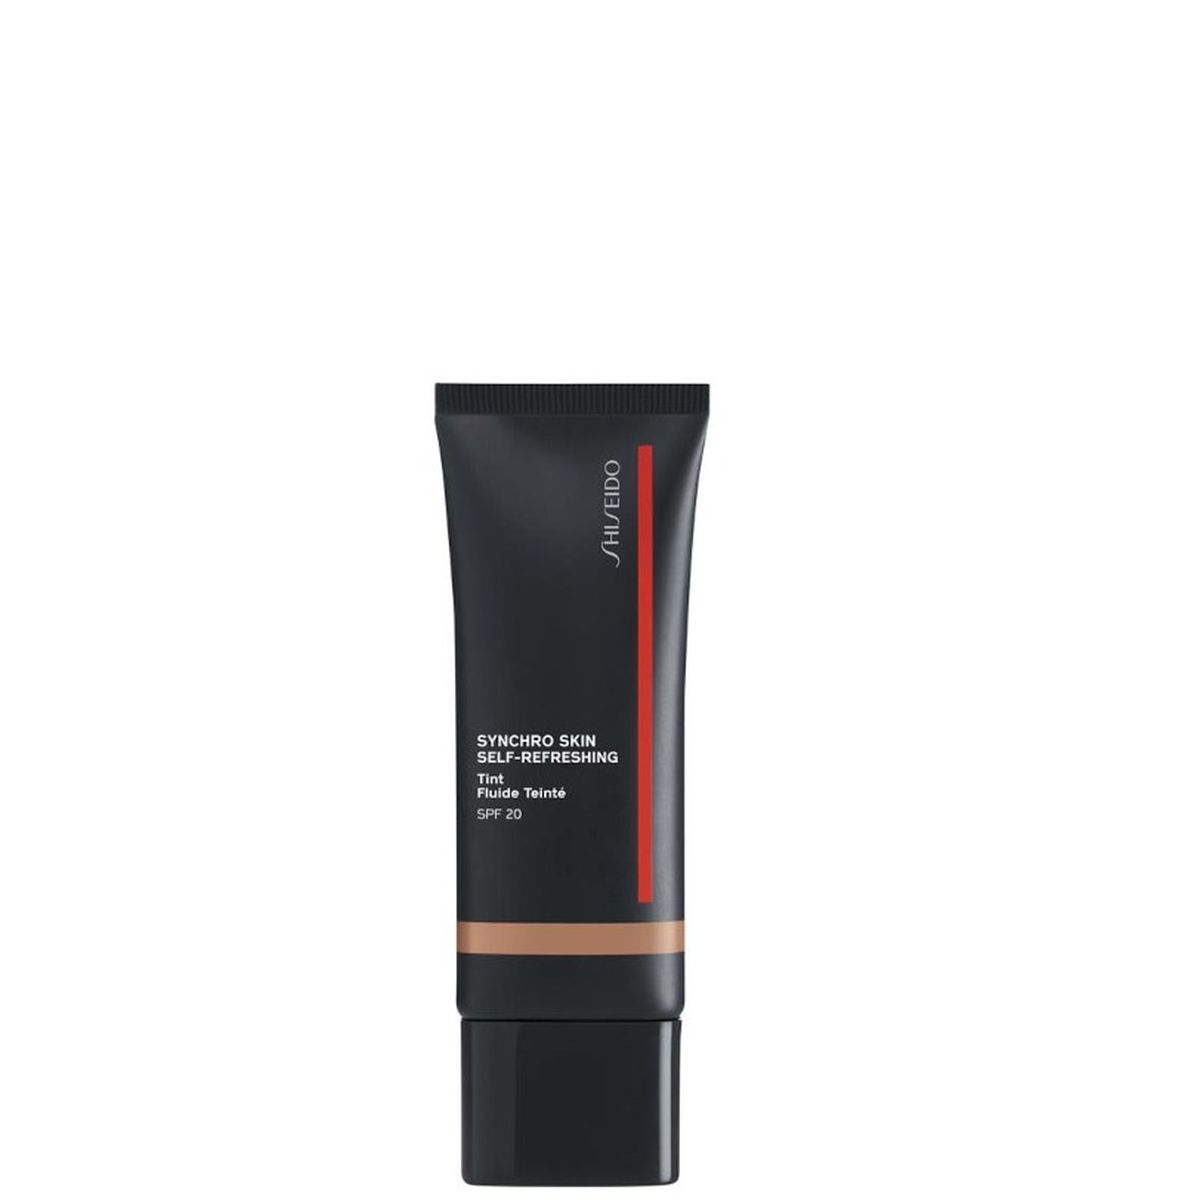 Shiseido - Synchro Skin Self Refreshing Fondotinta Fluido N. 325 Medium Keyaki